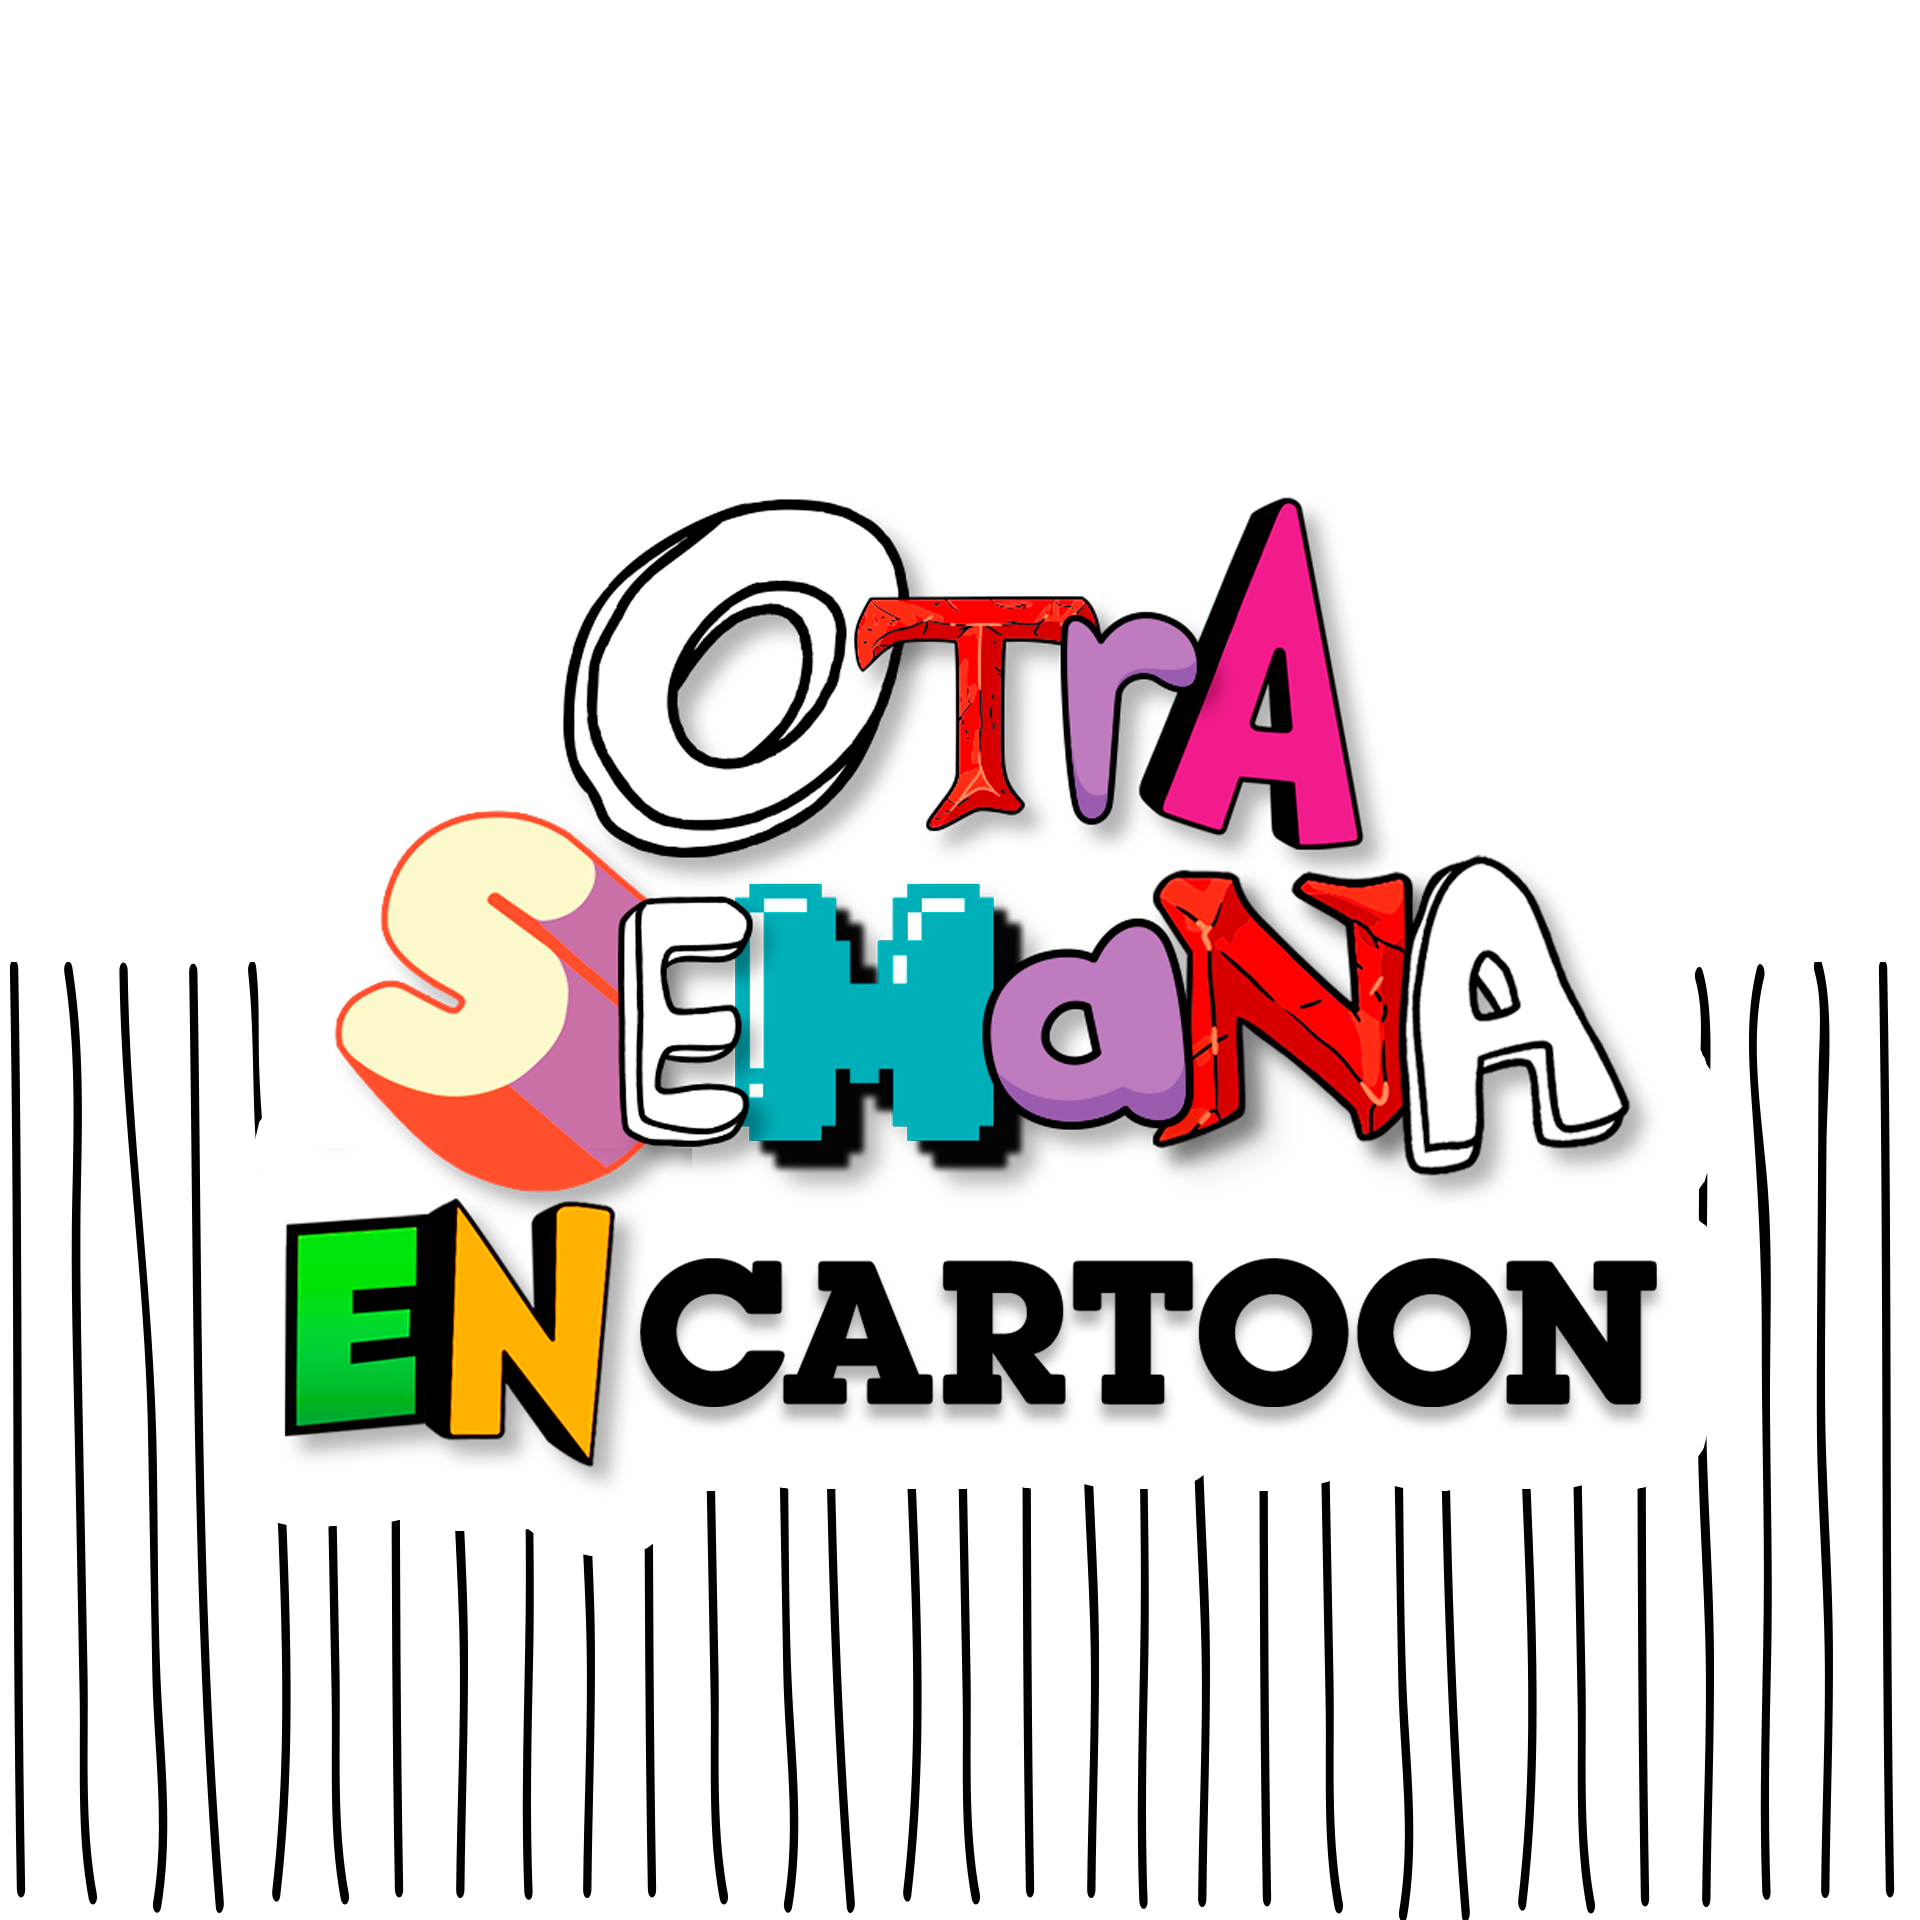 Outro Jogo No Cartoon  Cartoon Network Brasil